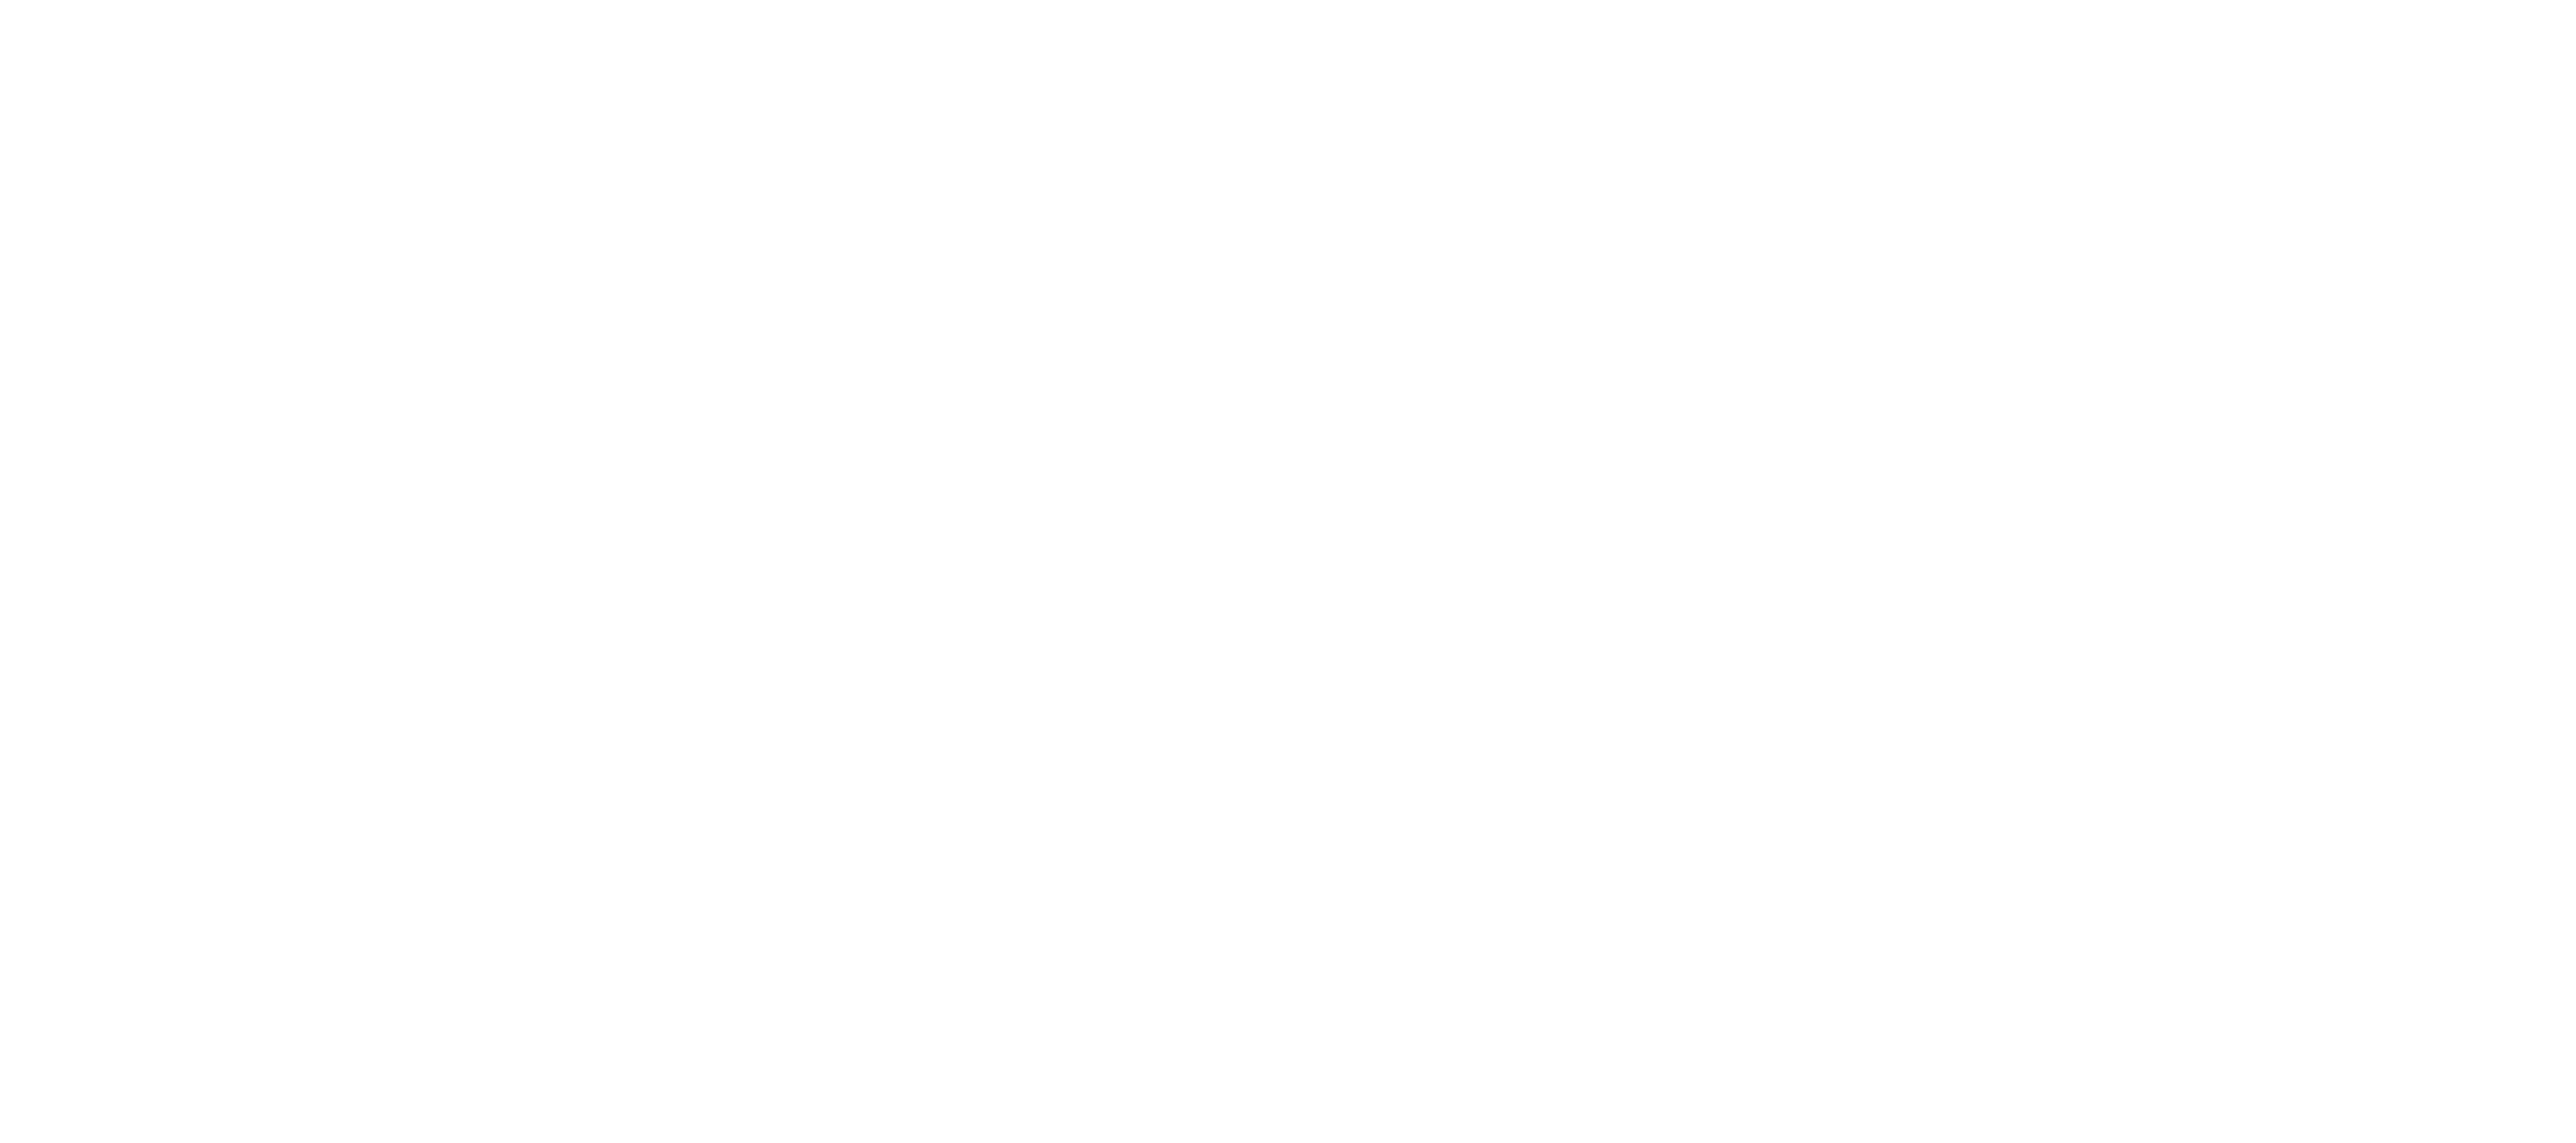 3 Days to Kill logo